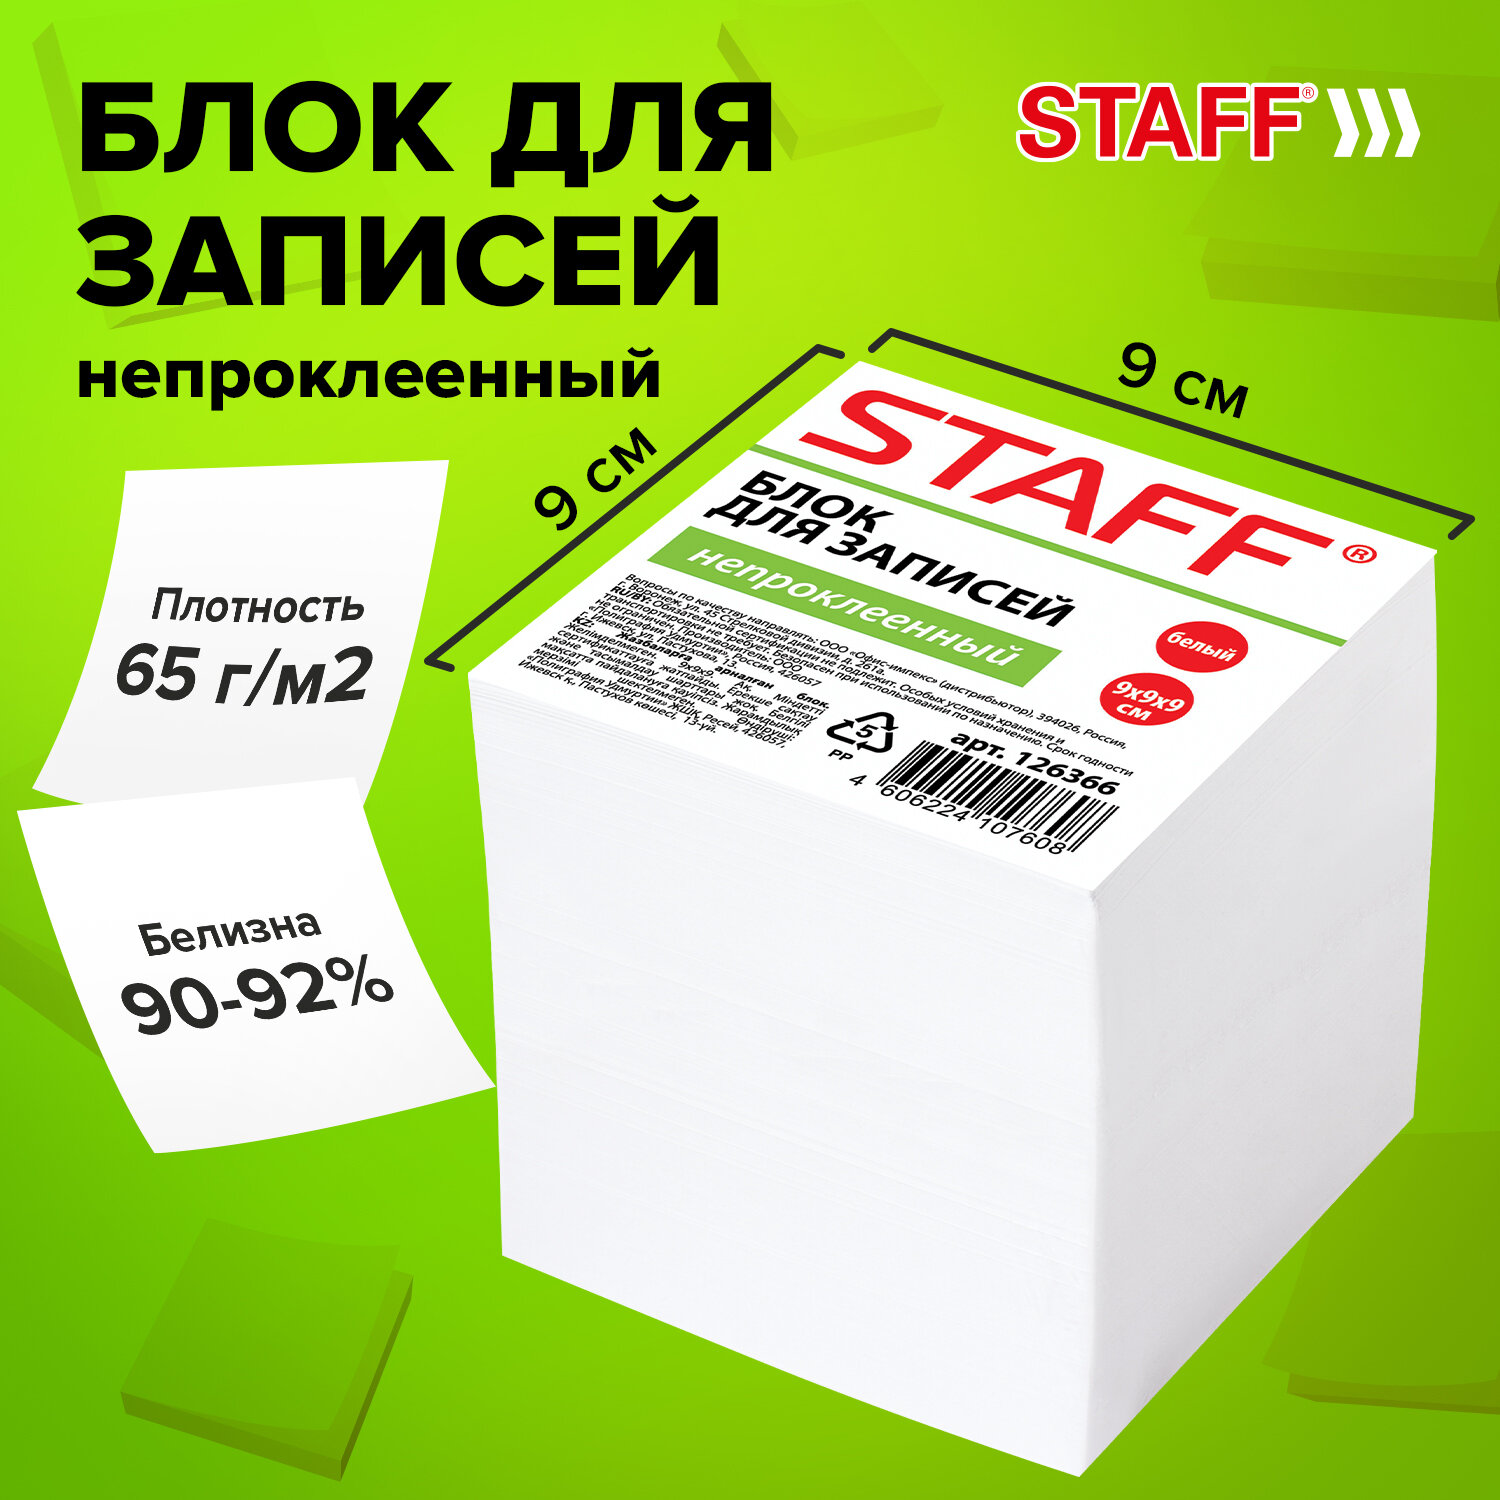 STAFF  STAFF 126366,  9 .